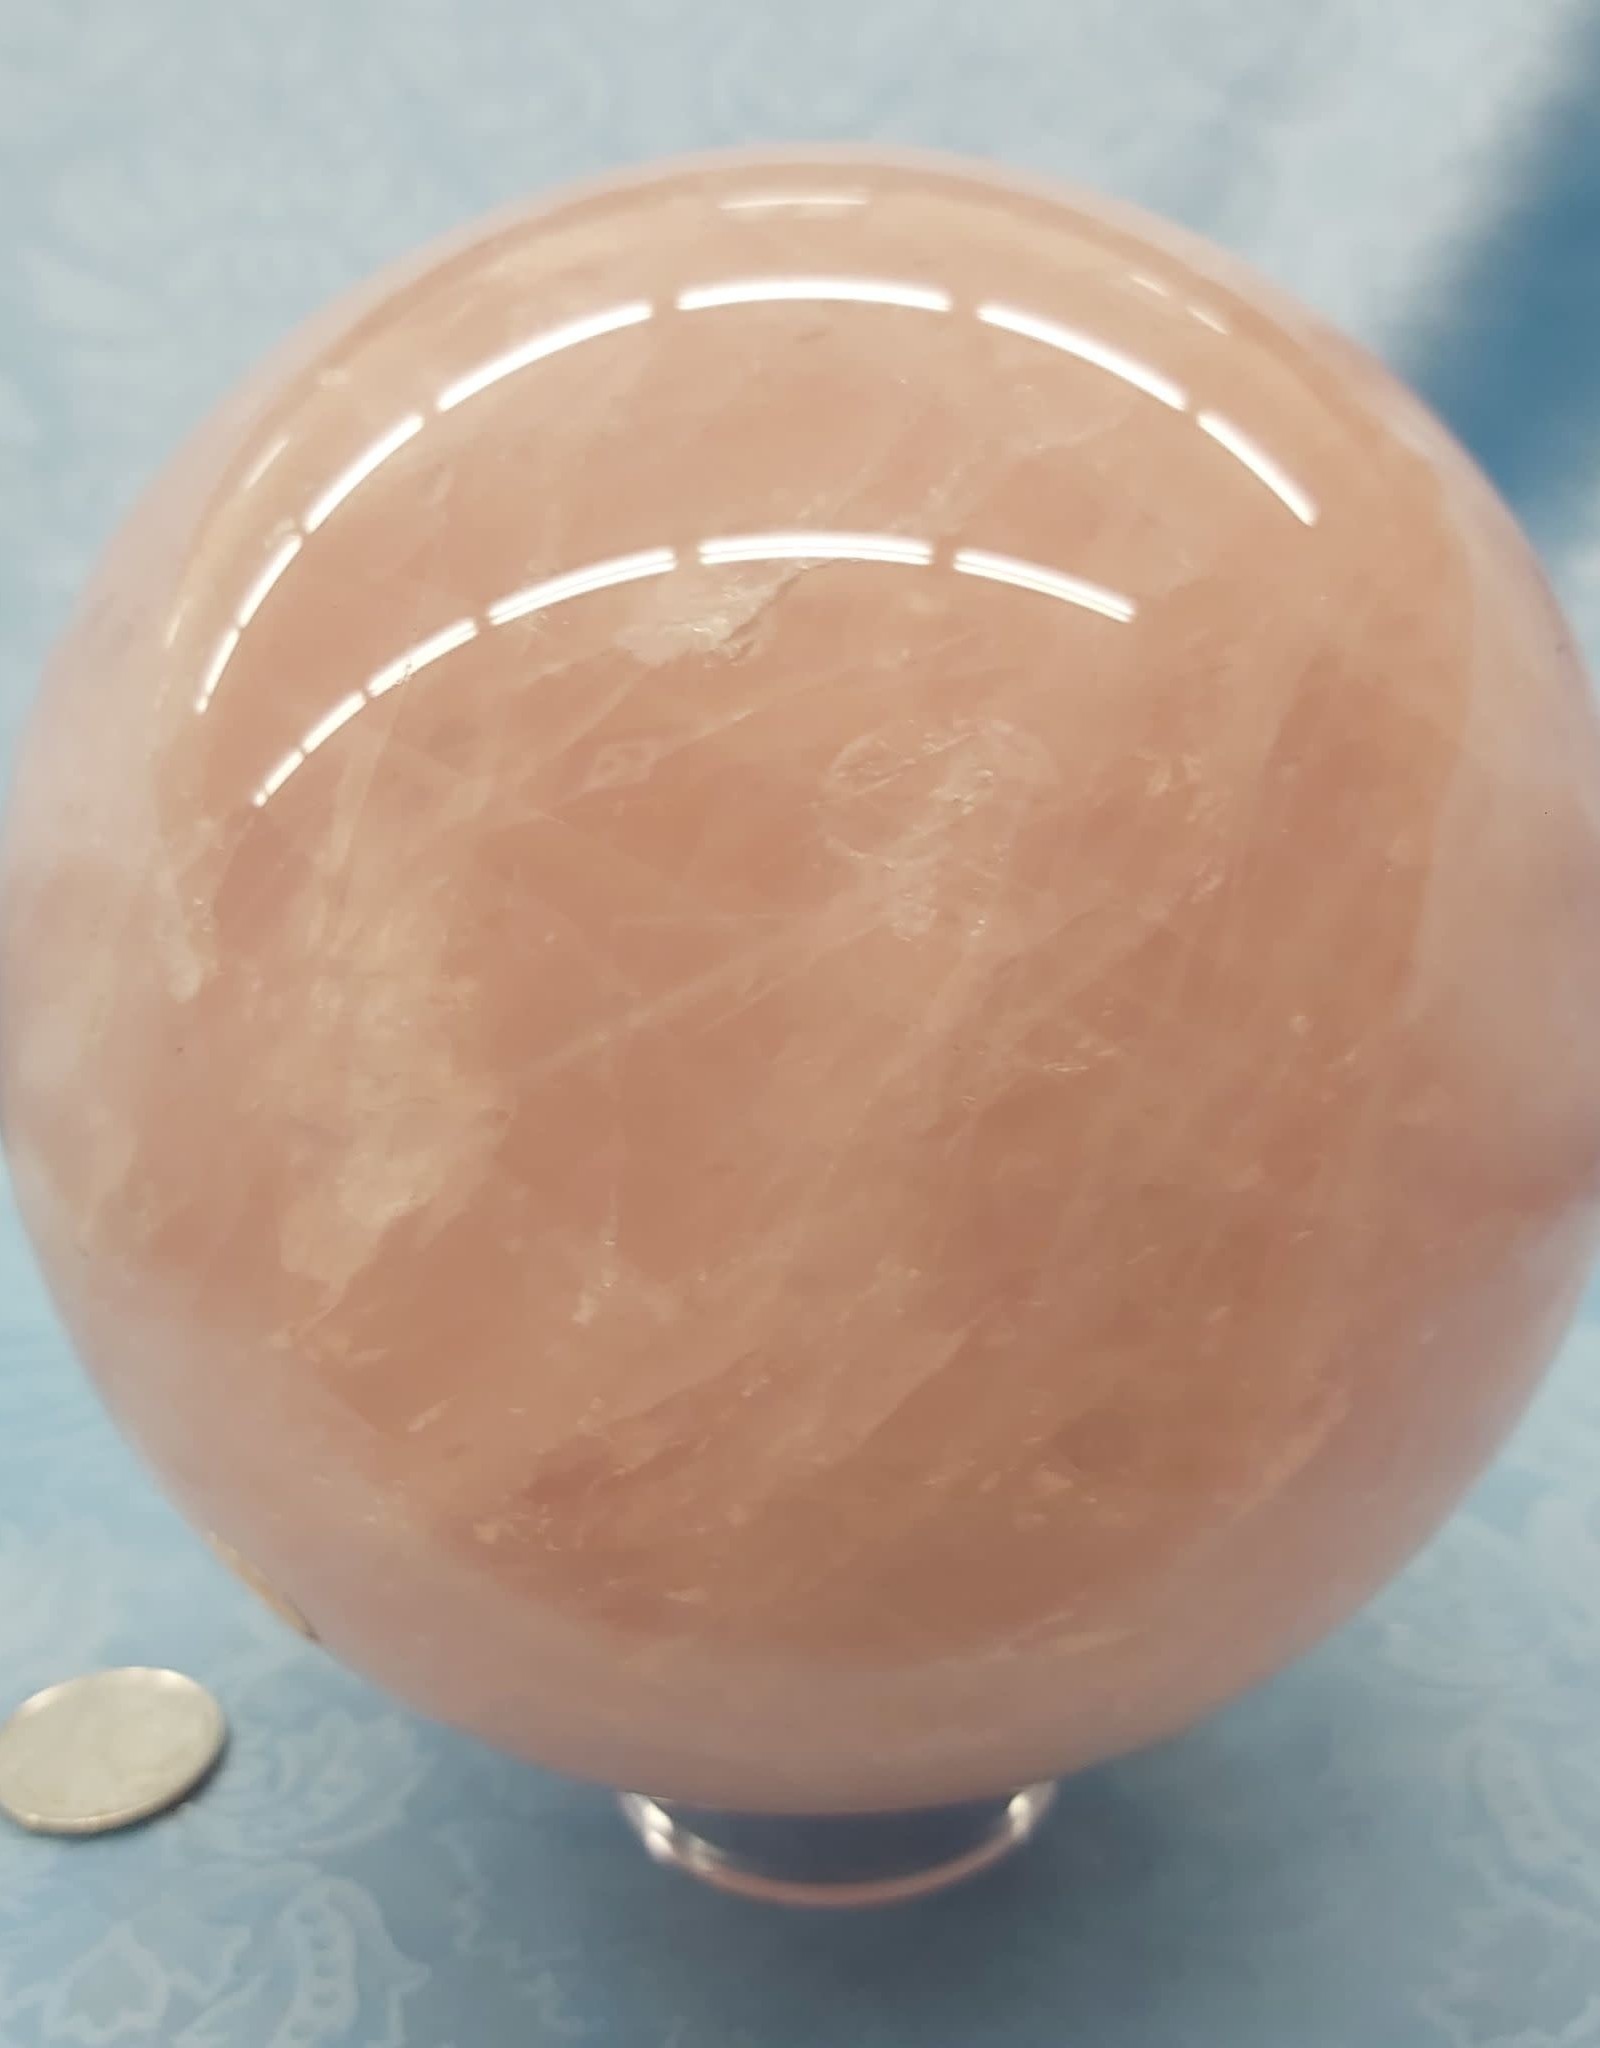 Rose Quartz Sphere 6in - $500